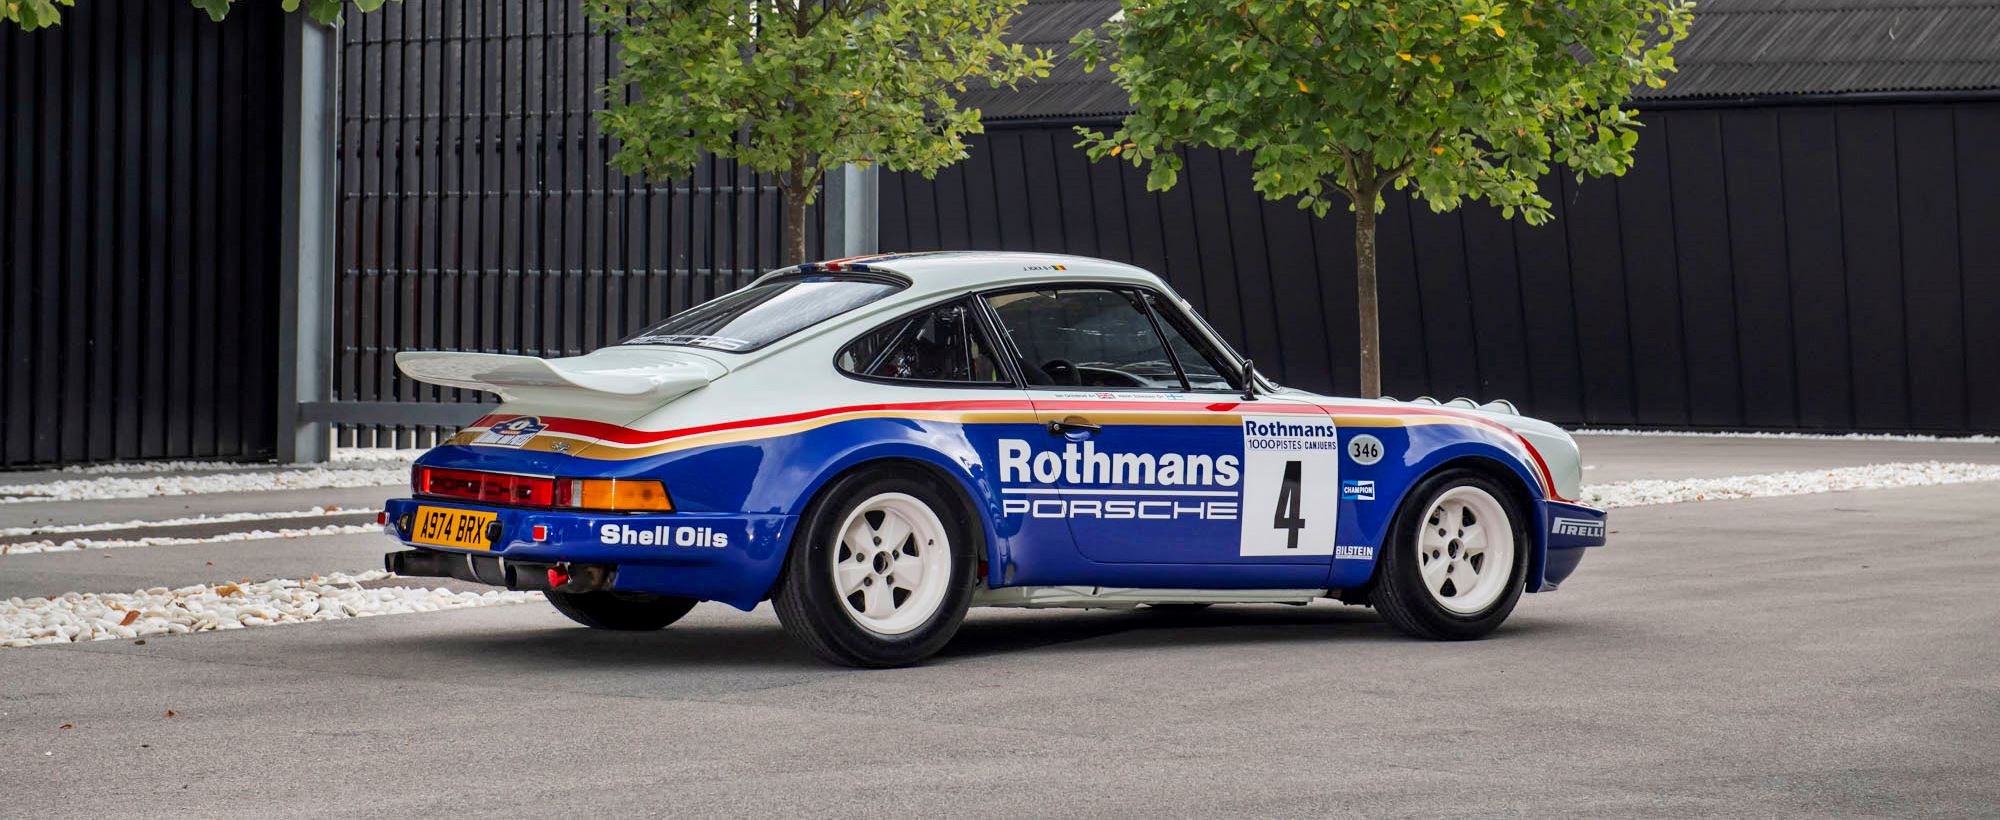 Porsche 911 Rothmans 071.jpg